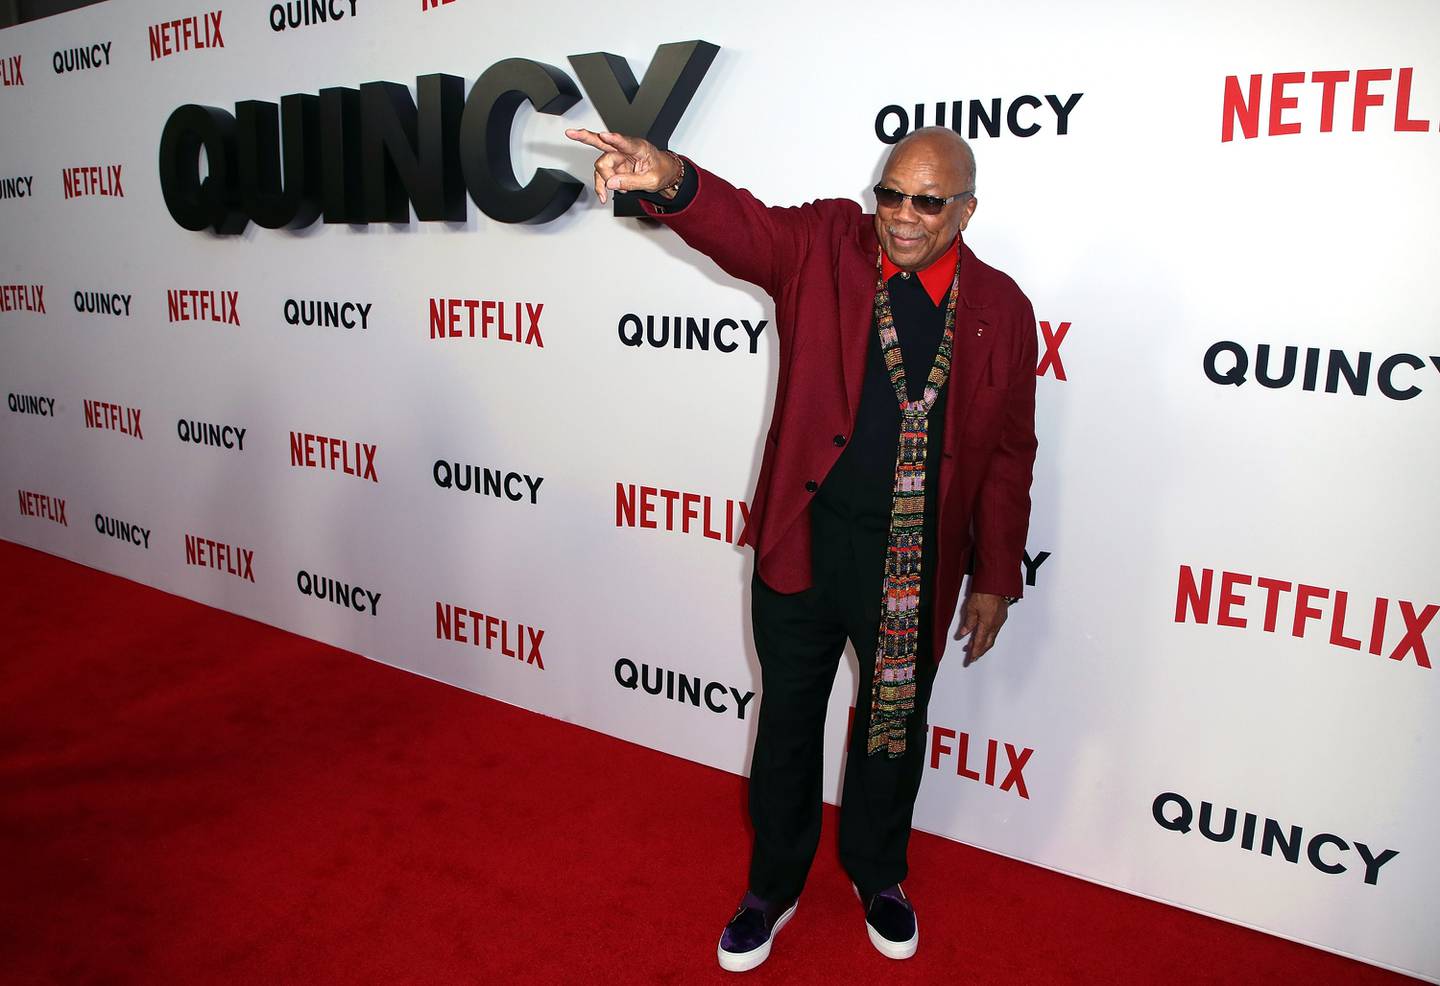 Quincy Jones, legendarisk musikkprodusent, på premieren for dokumentarfilmen "Quincy", som handler om hans liv.